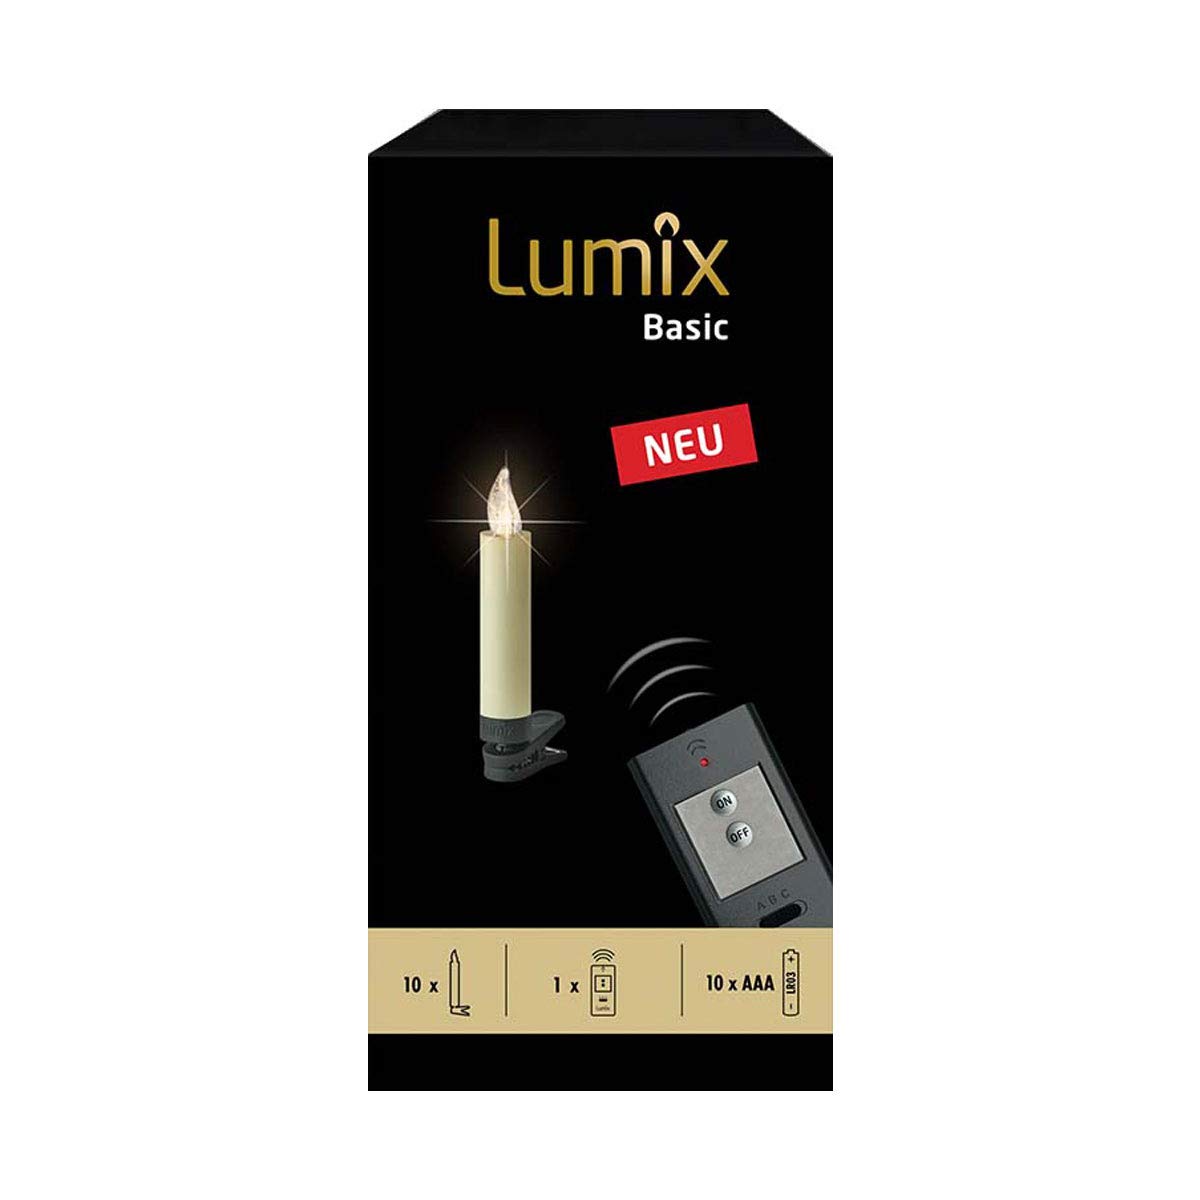 Lumix® LED kabellose Weihnachtsbaum Christbaumkerzen Basic Mini 10er Basis-Set Warmweiß inkl. Fernbedienung ohne Timer Elfenbein 9cm 75460